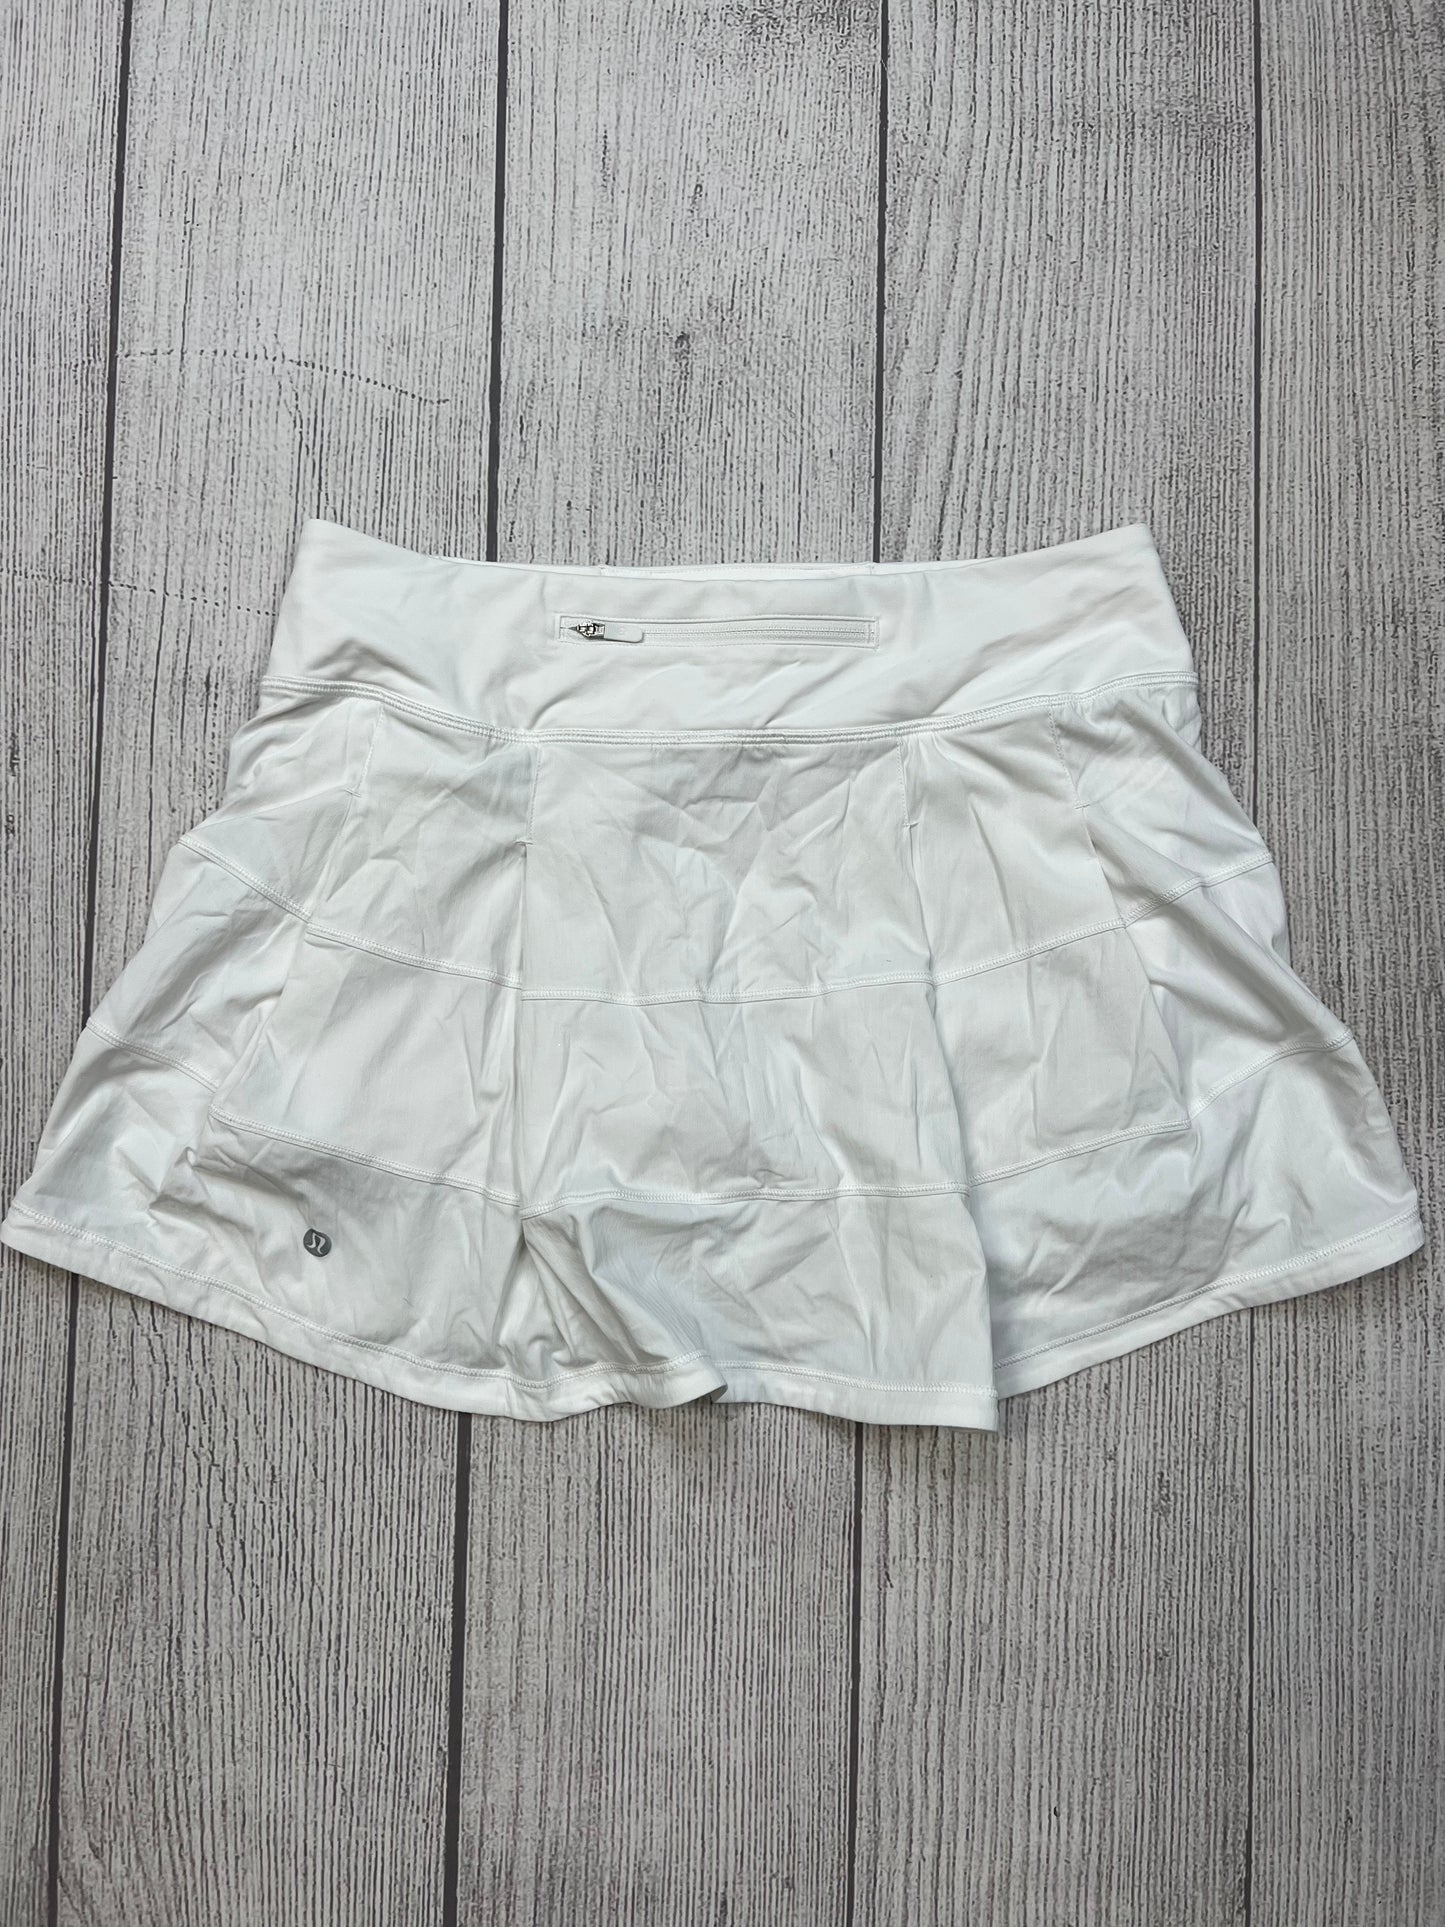 White Athletic Skirt Skort Lululemon, Size S